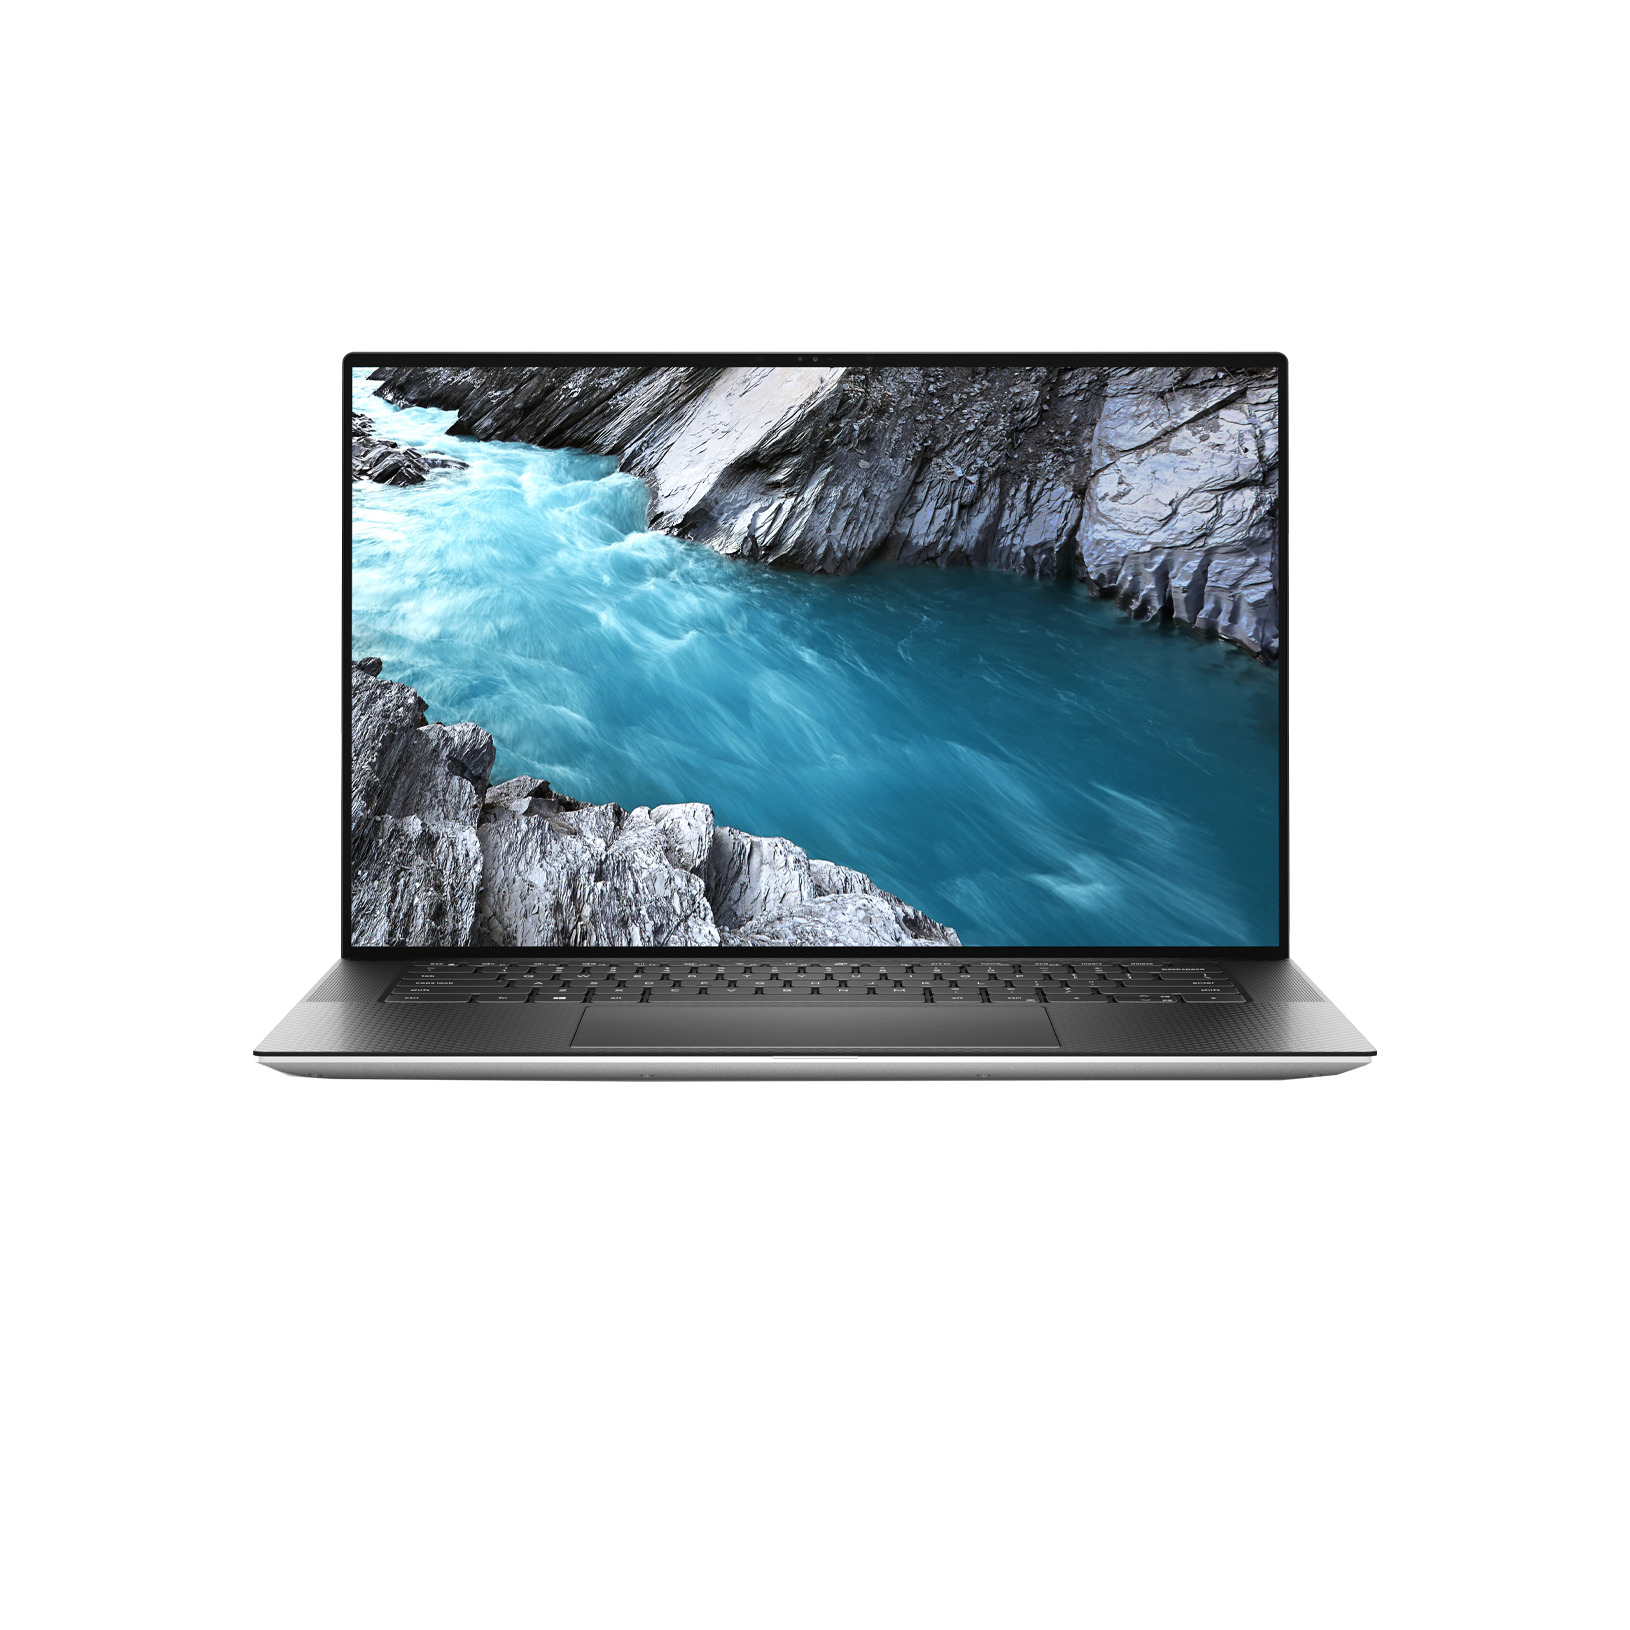 Laptop Dell XPS 15 9500 70221010 - Intel Core i7-10750H, 16GB RAM, SSD 512GB, Nvidia GeForce GTX 1650 Ti 4GB GDDR6, 15.6 inch